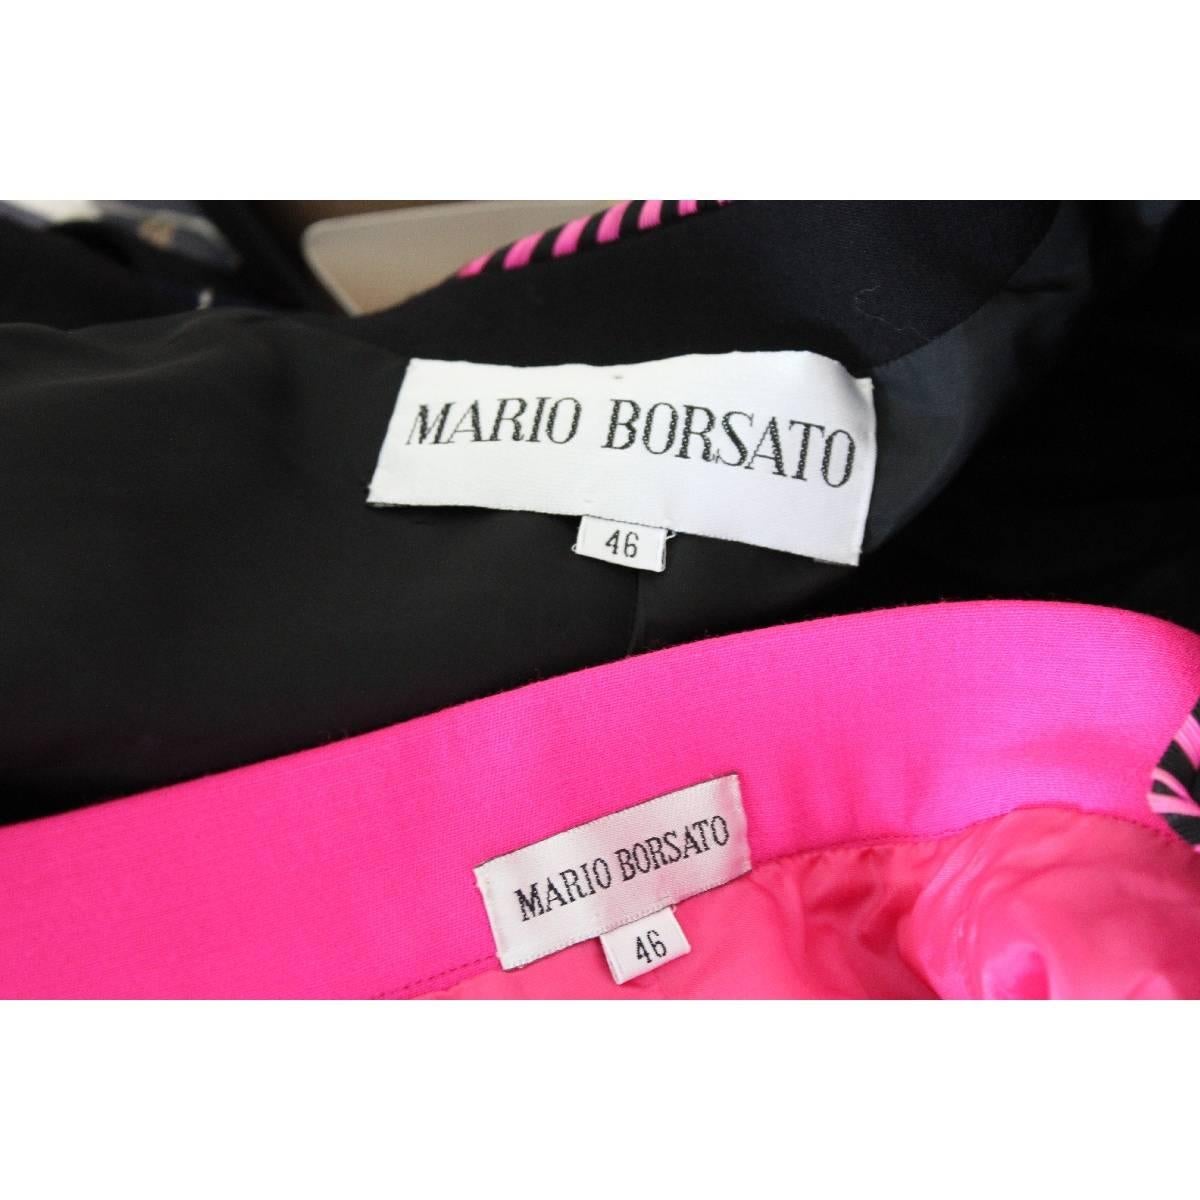 NWT Mario Borsato vintage skirt suit tailleur black purple women’s 1980s size 46 For Sale 4